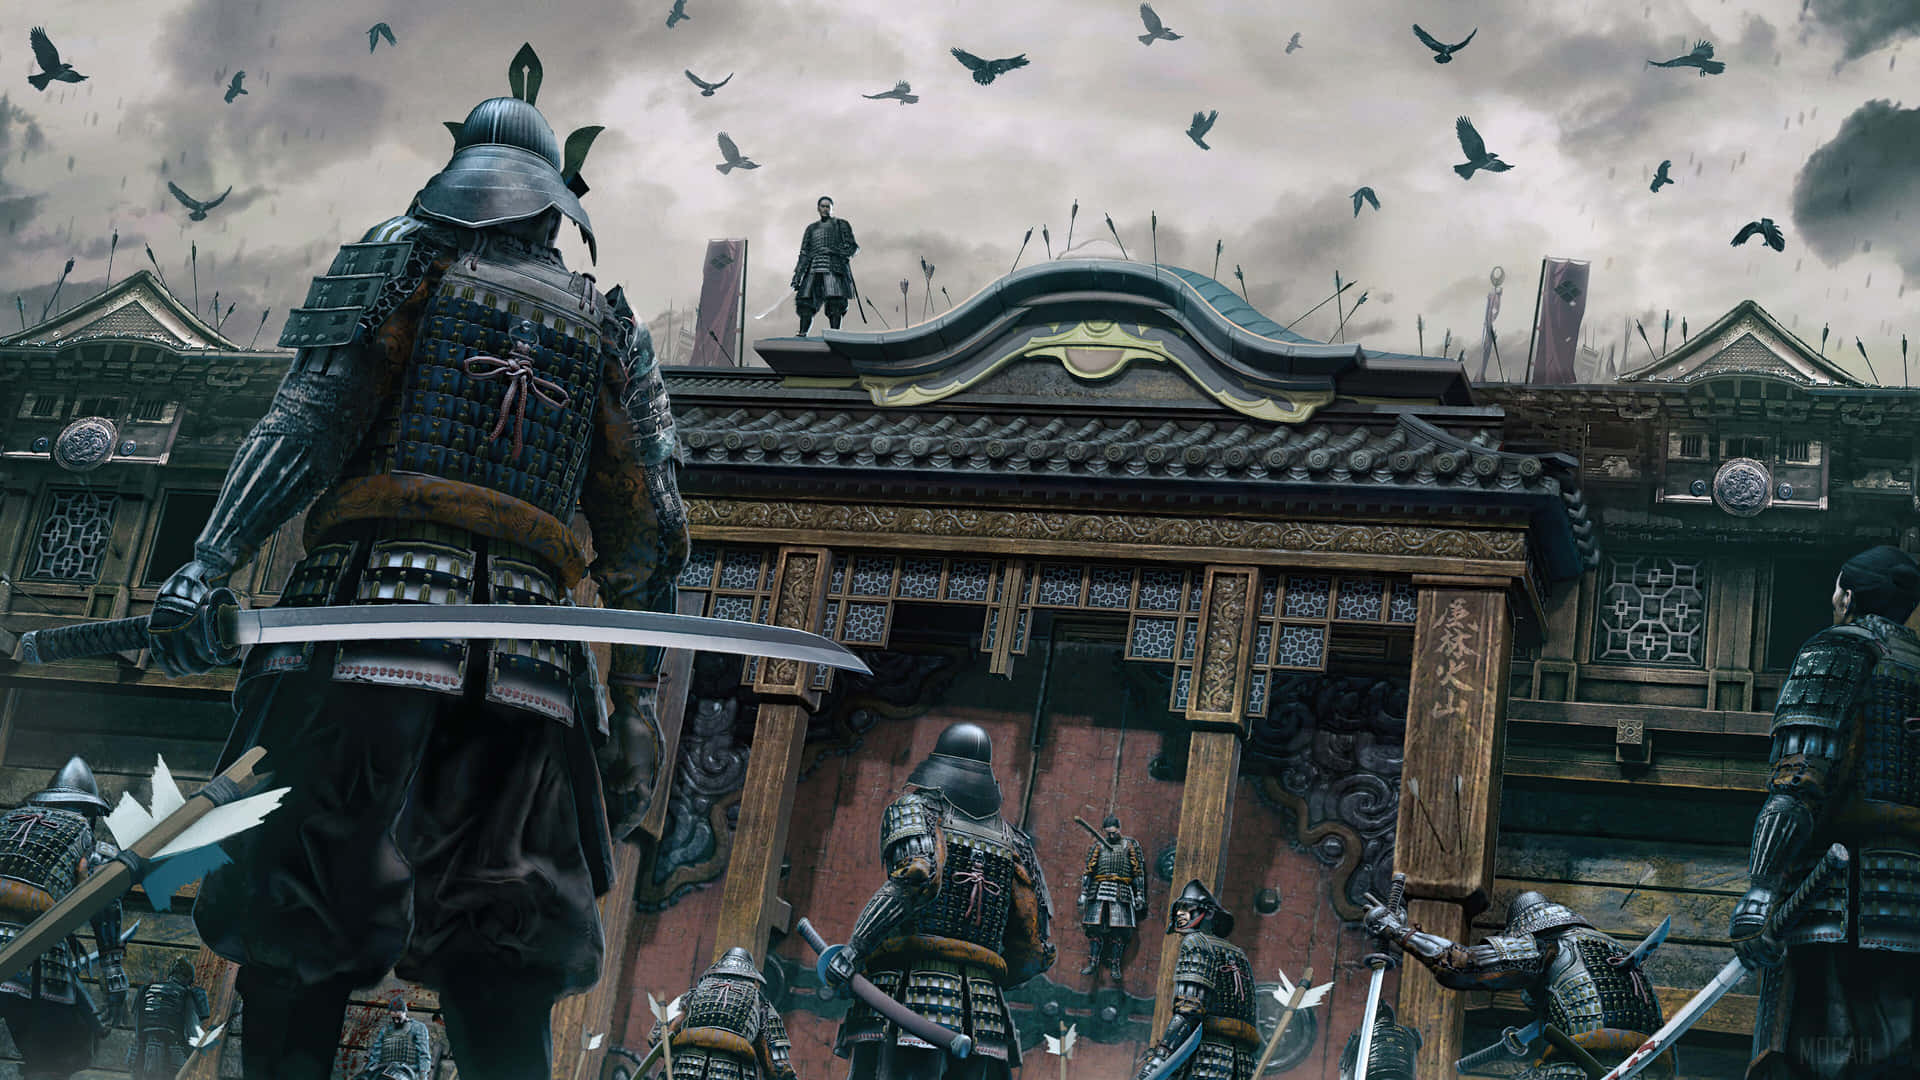 Intense Samurai Battle in Full Action Wallpaper